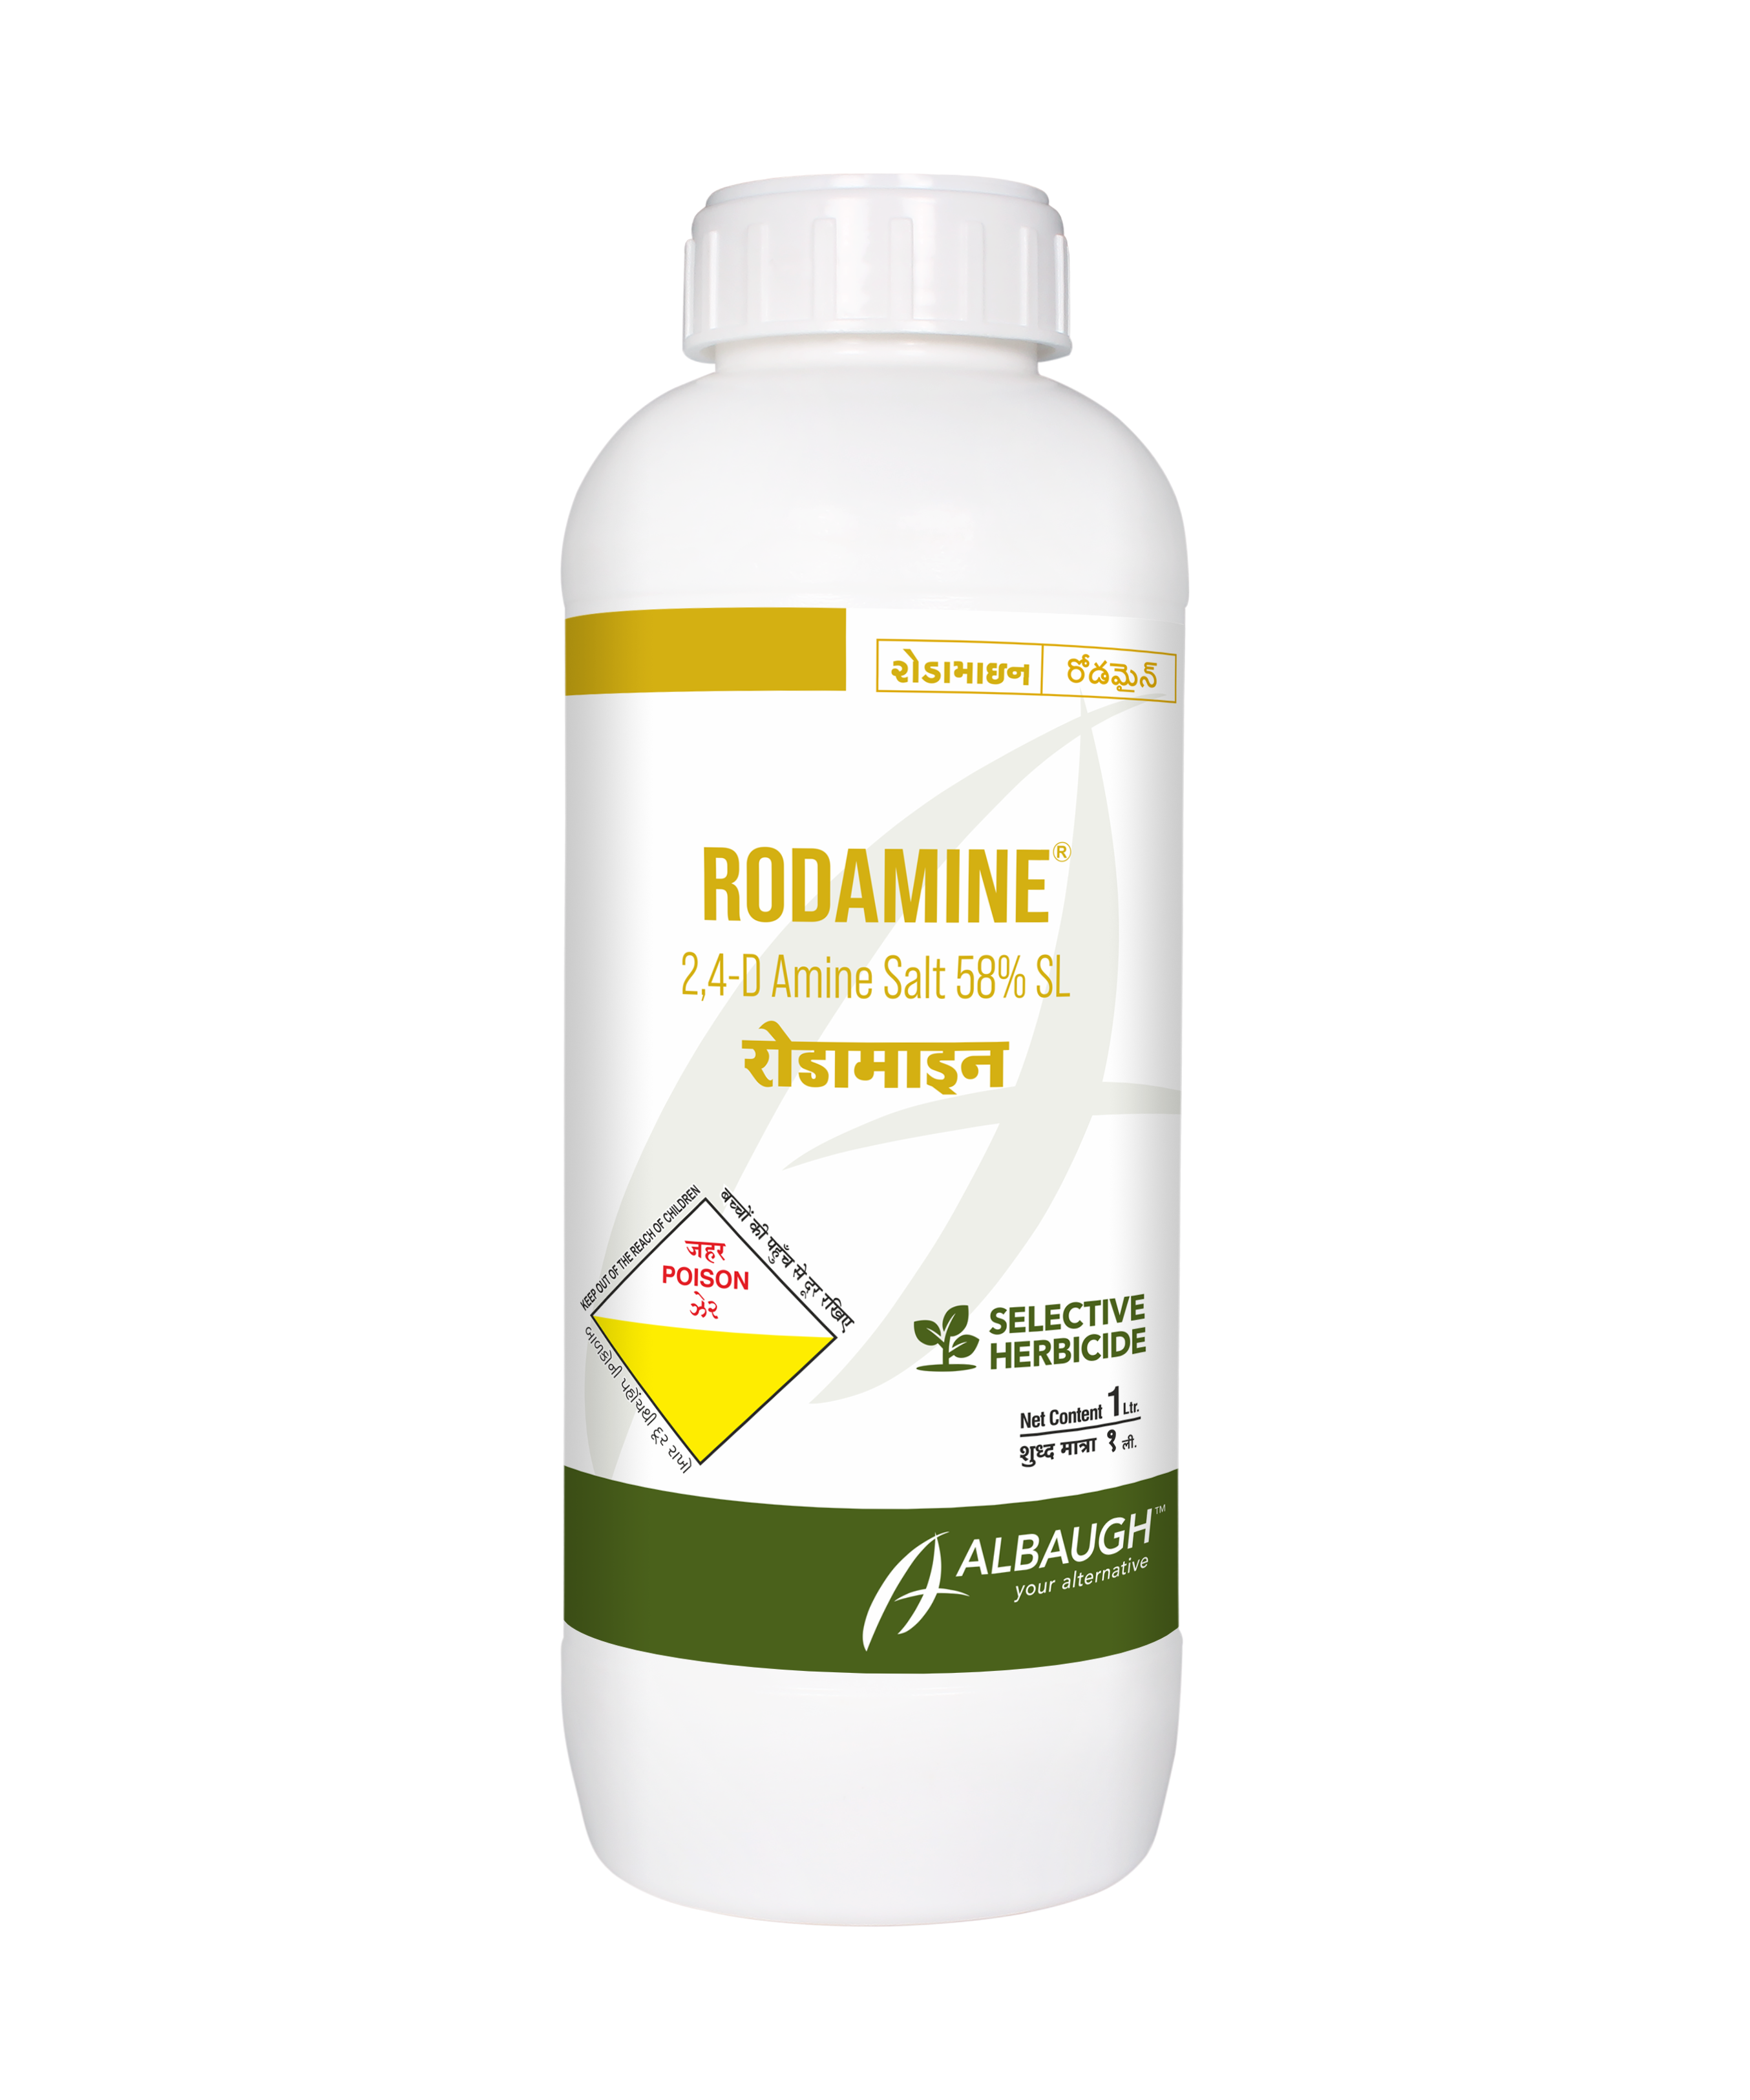 Rodamine: 2,4-D Amine Salt 58% SL